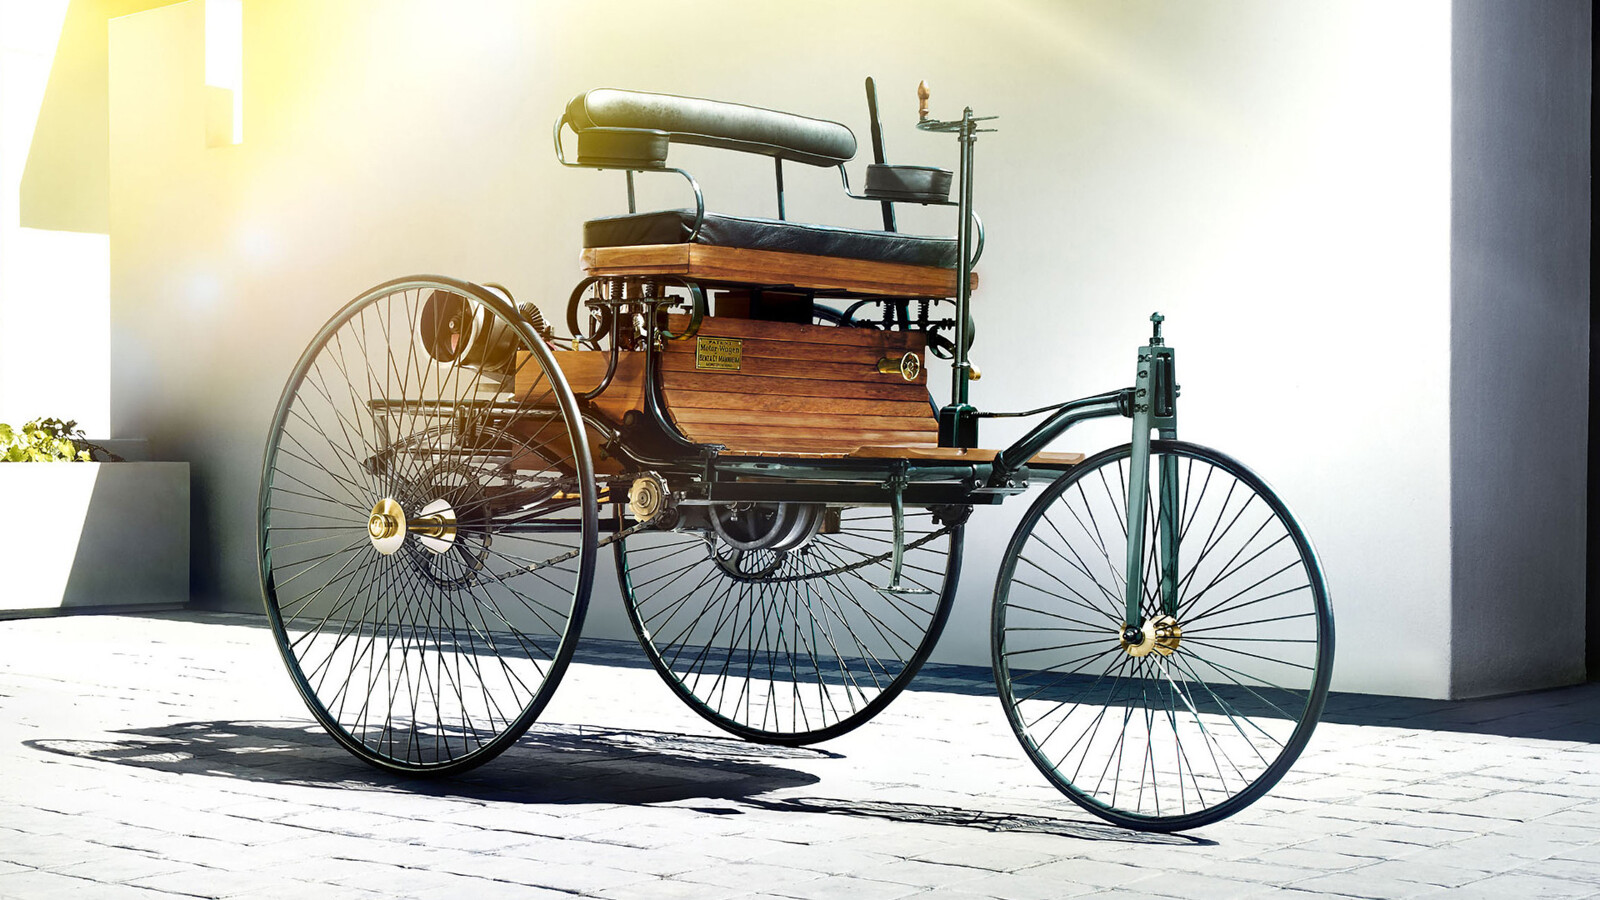 Первый автомобиль внутреннего сгорания. Машина Benz Patent-Motorwagen. Mercedes-Benz Motorwagen (1885 г.).